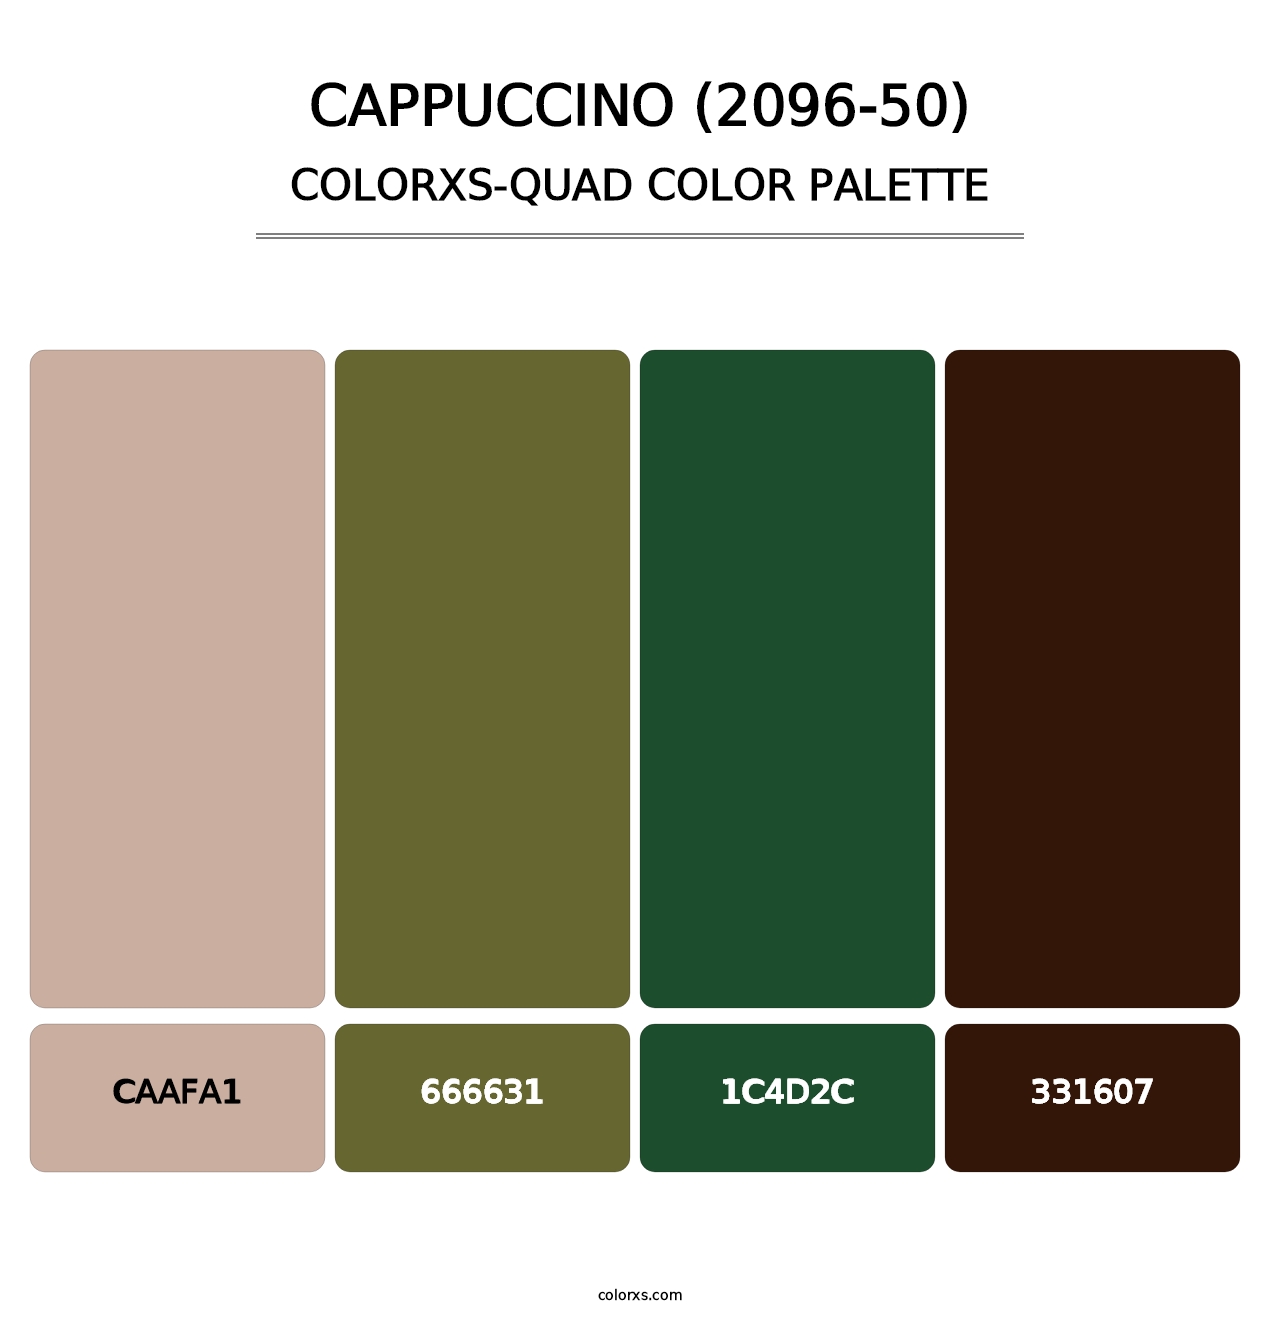 Cappuccino (2096-50) - Colorxs Quad Palette